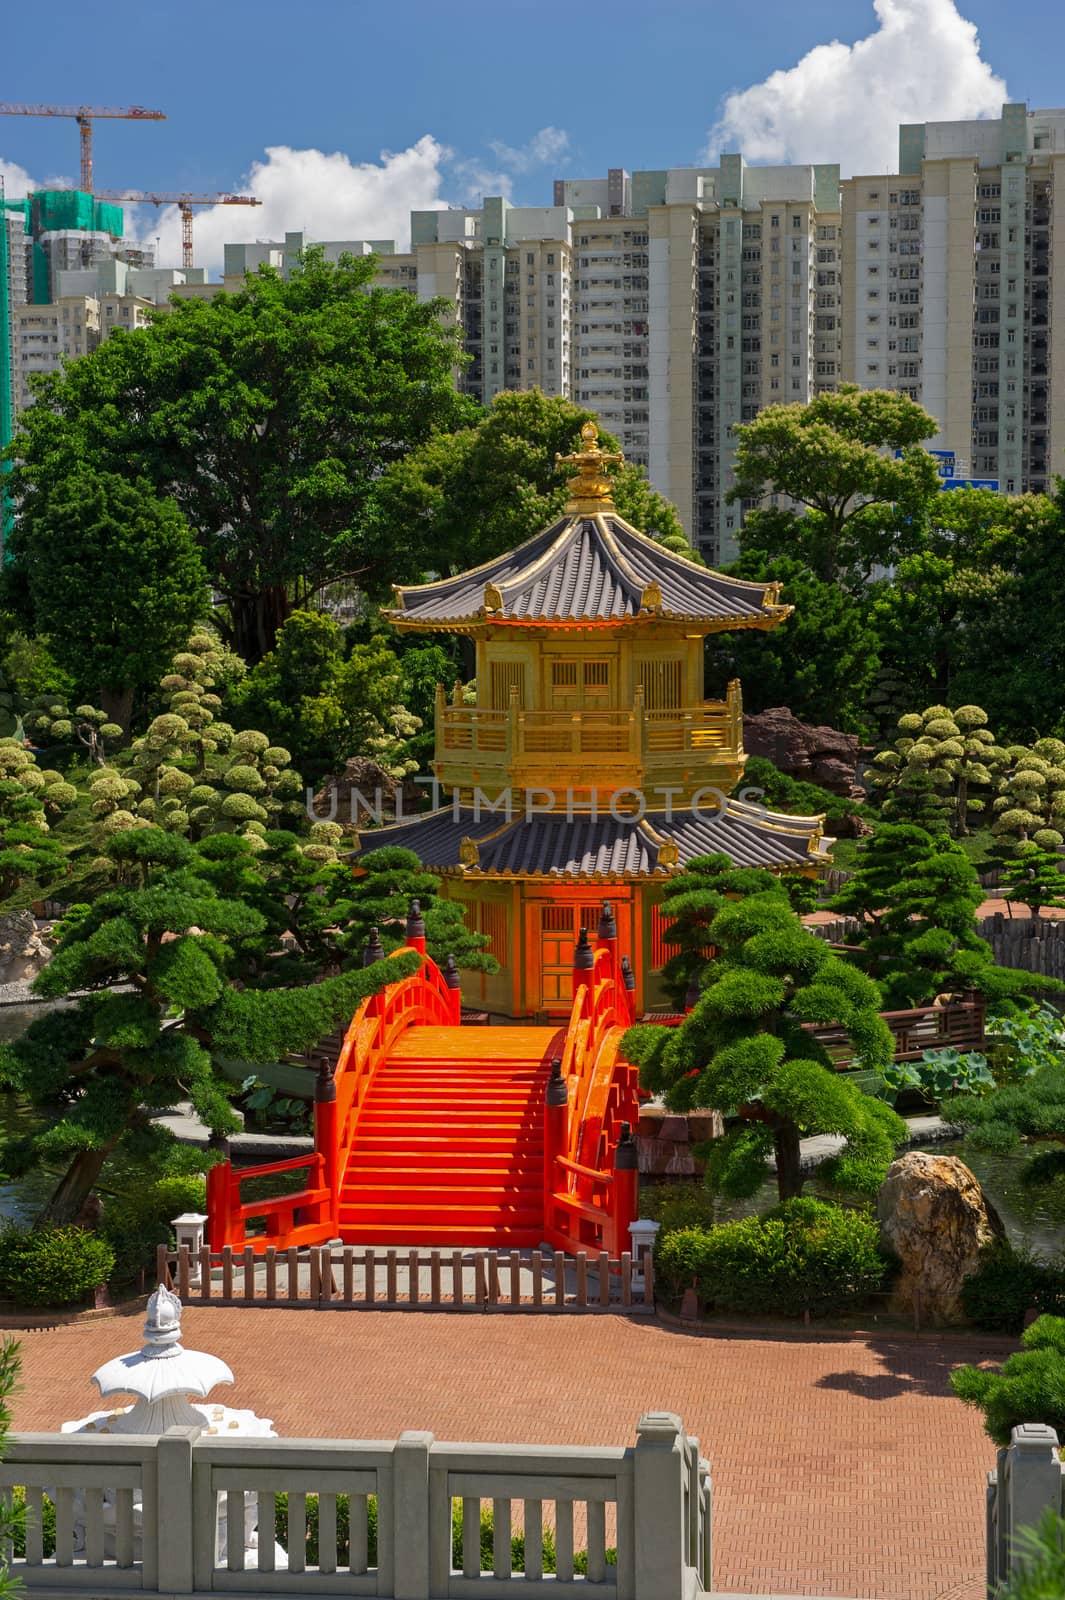 Arch Bridge and Pavilion in Nan Lian Garden, Hong Kong.